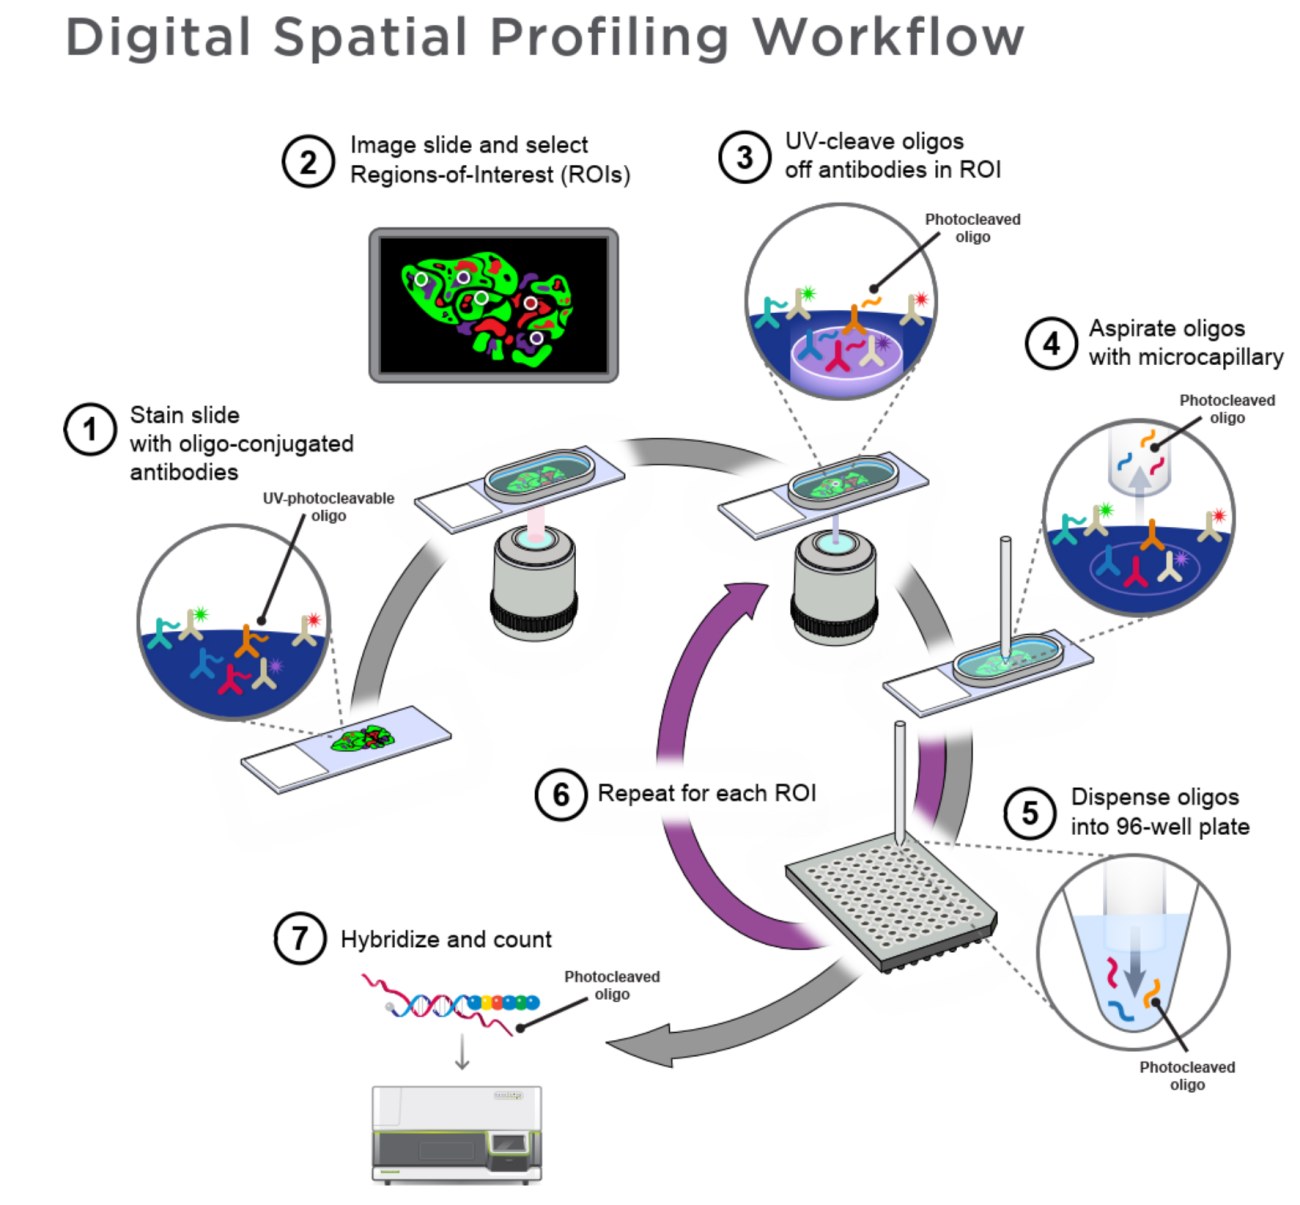 GeoMx - Digital Spatial Profiling Workflow